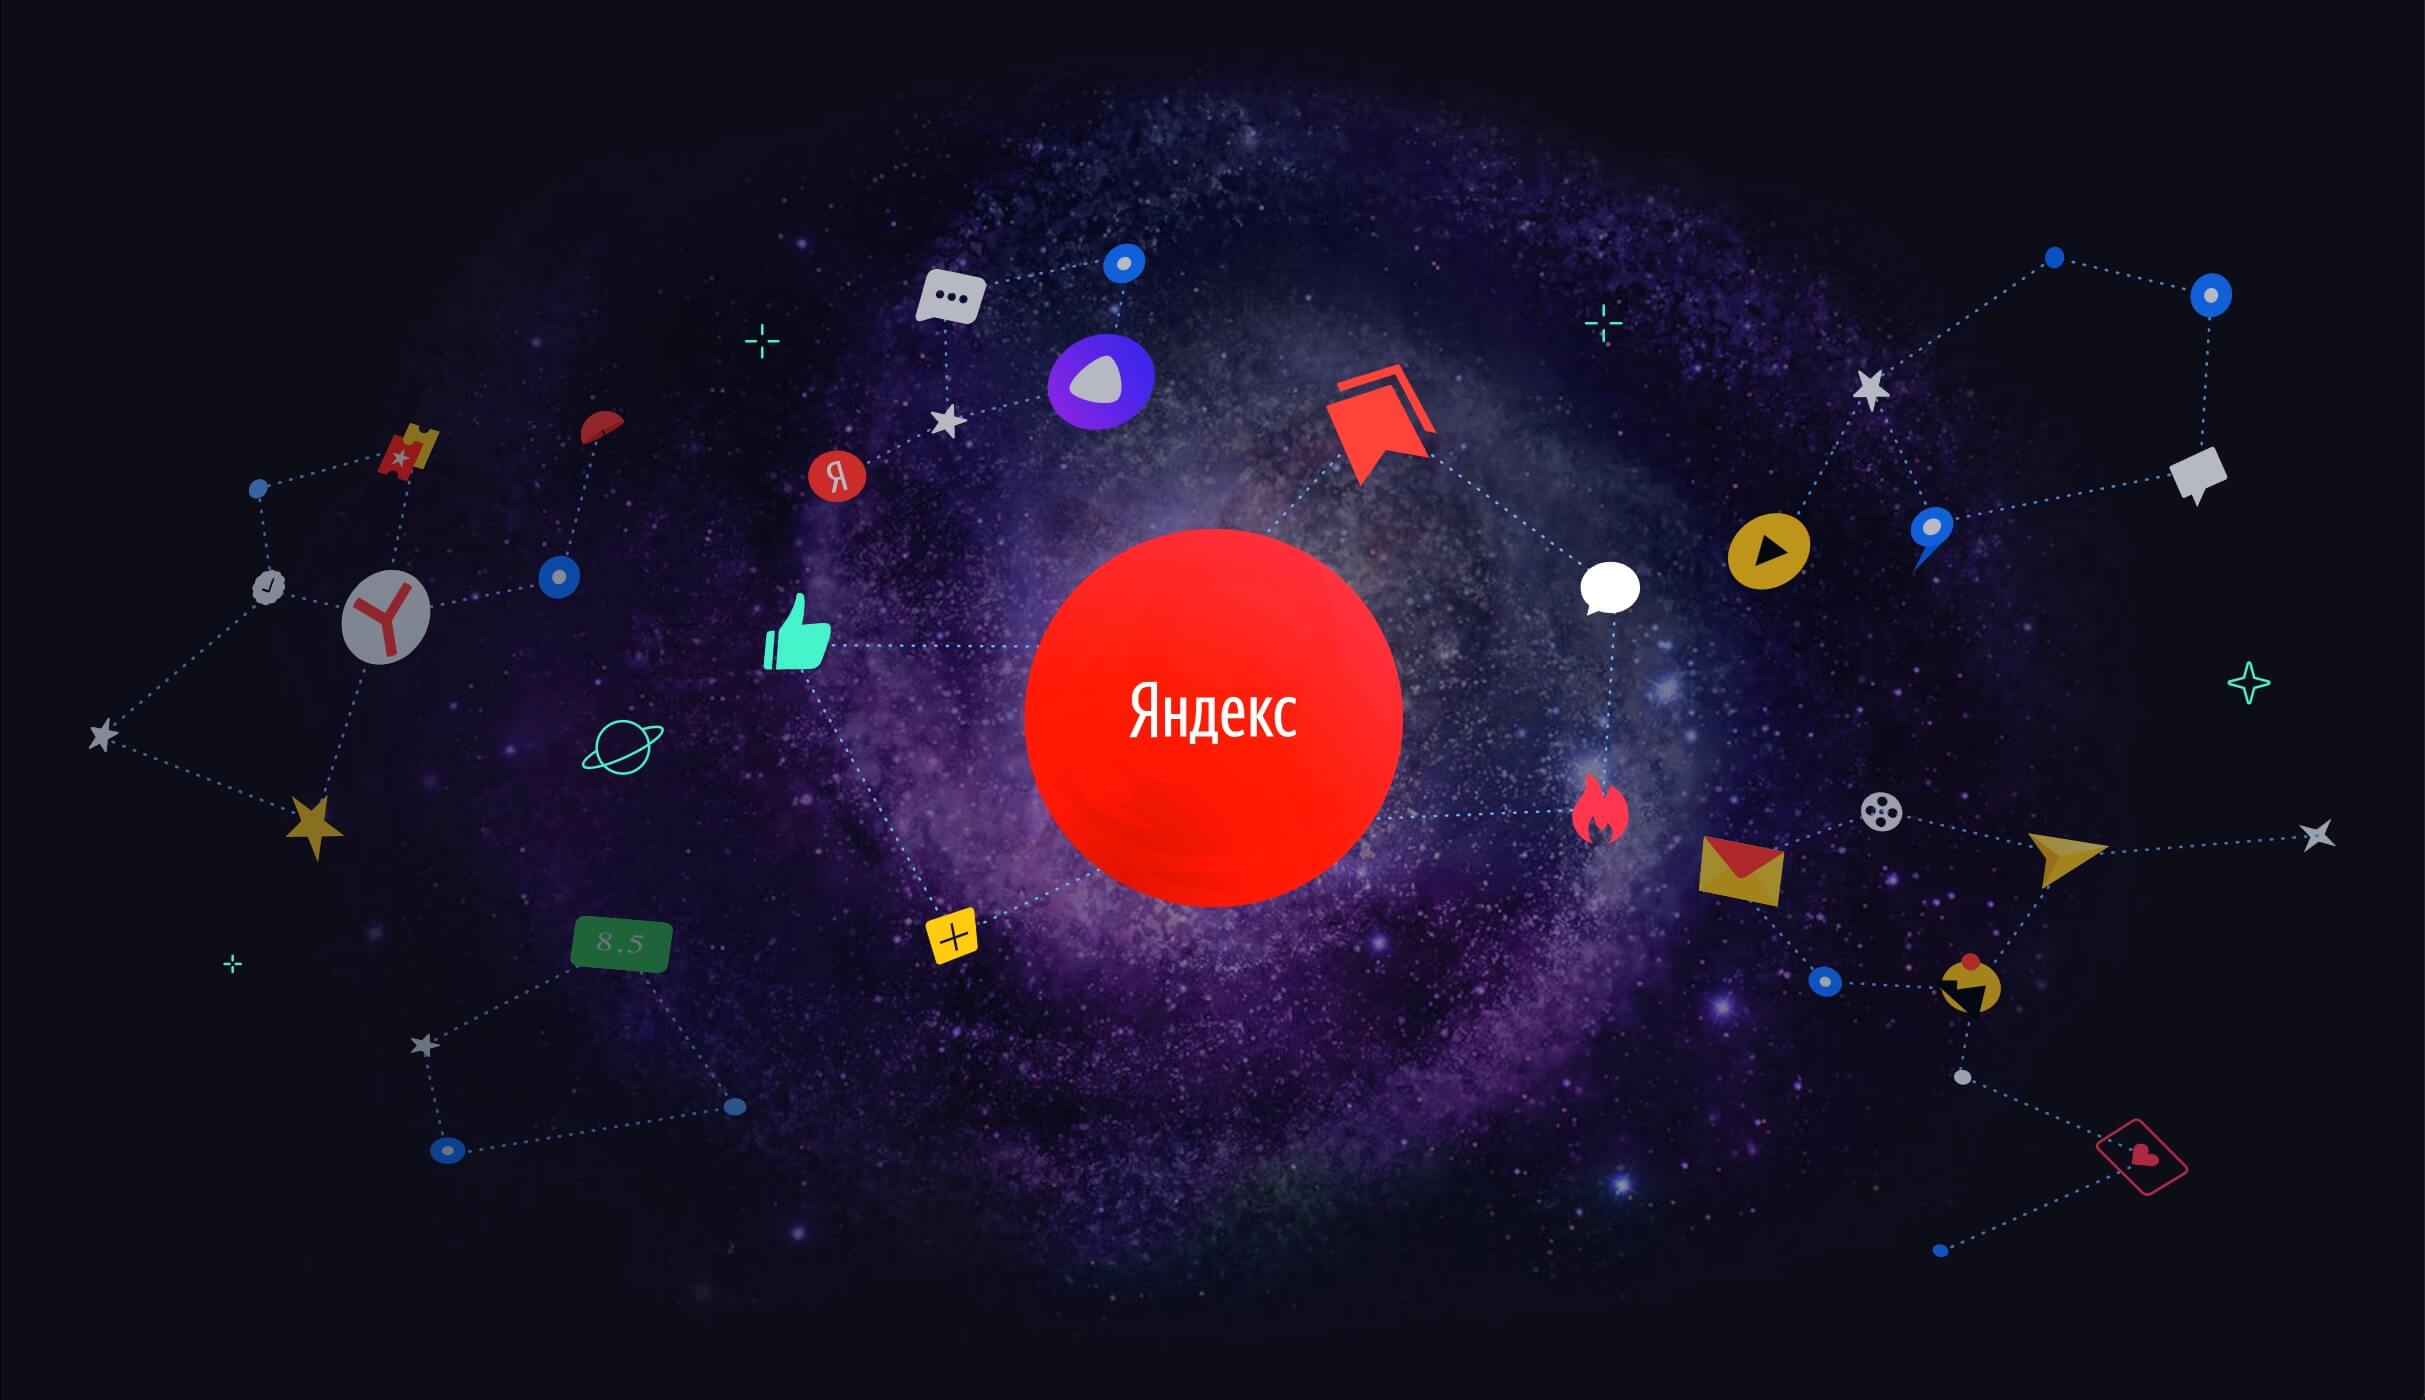 «Яндекс» представила обновленный поиск «Андромеда»